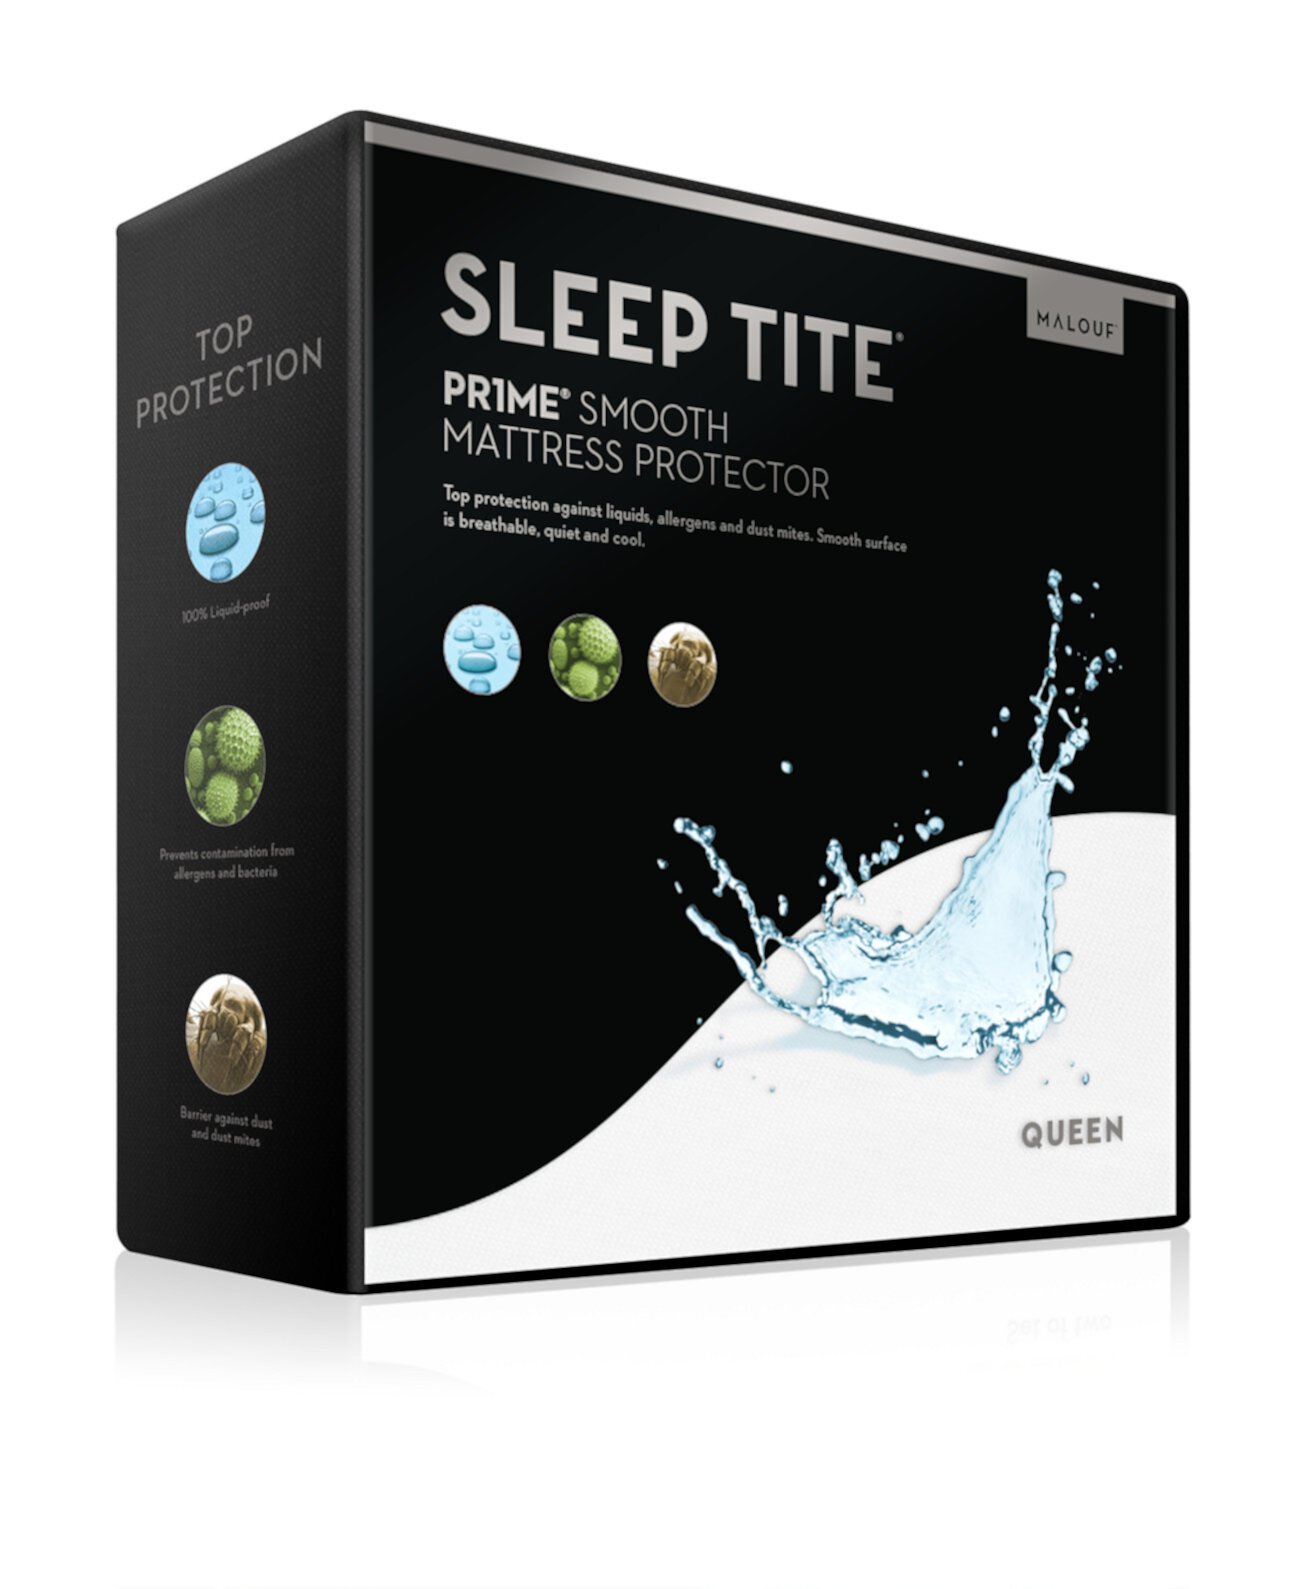 Протектор для гладкой подушки Sleep Tite Pr1me - King Malouf